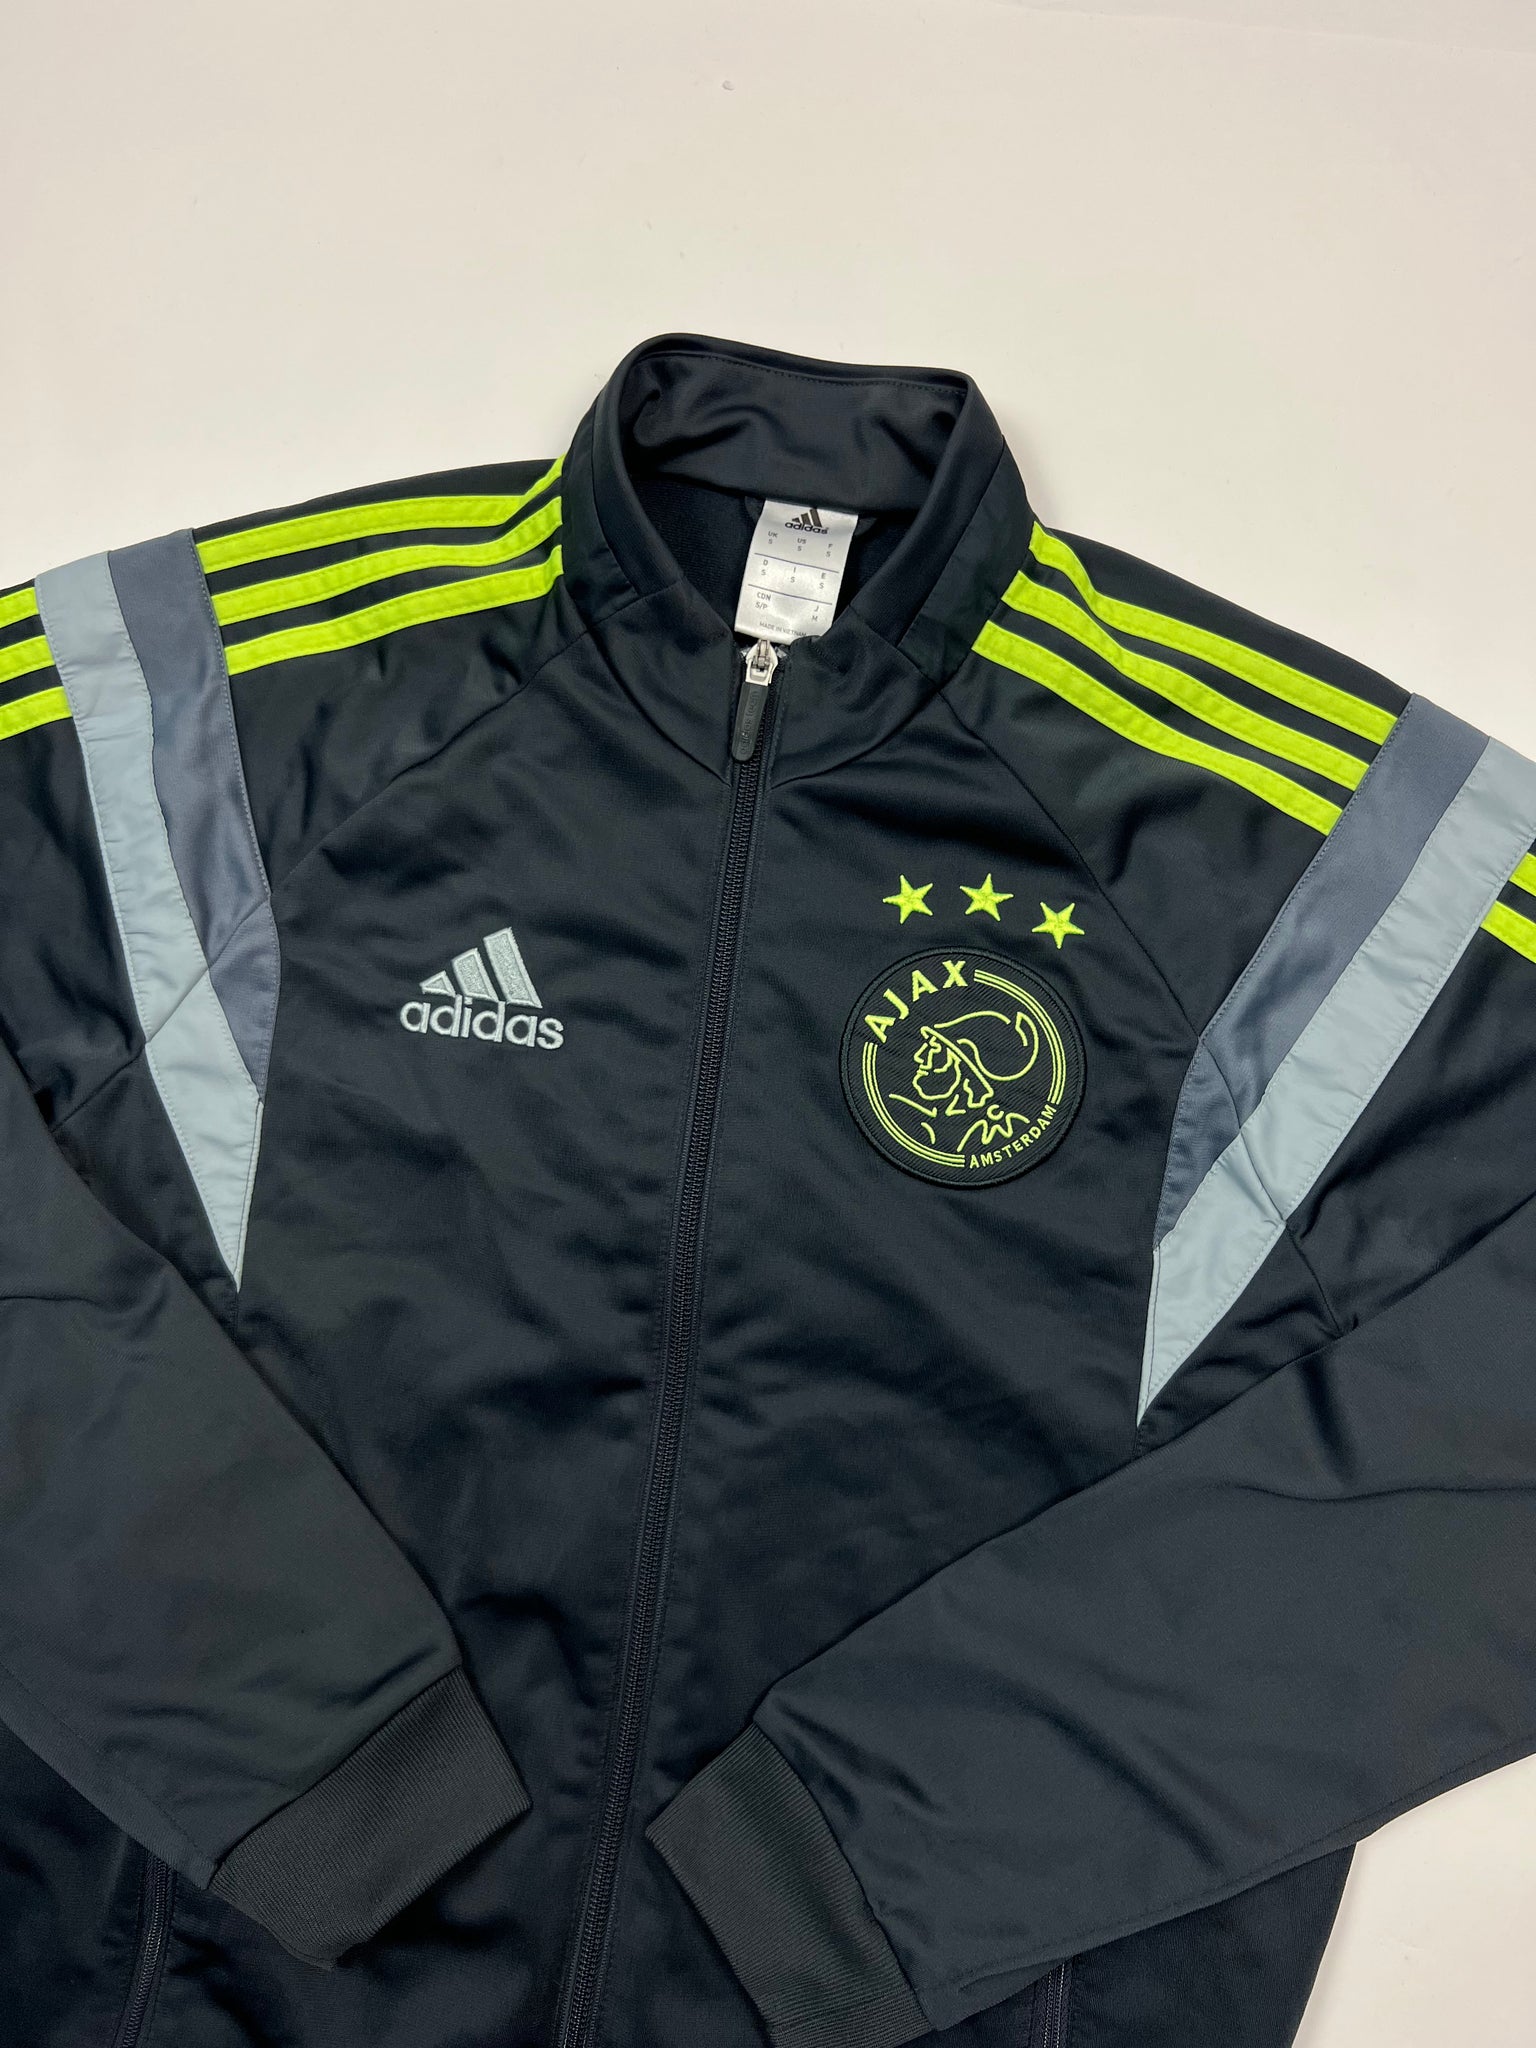 Adidas Ajax Amsterdam Track Jacket (S)